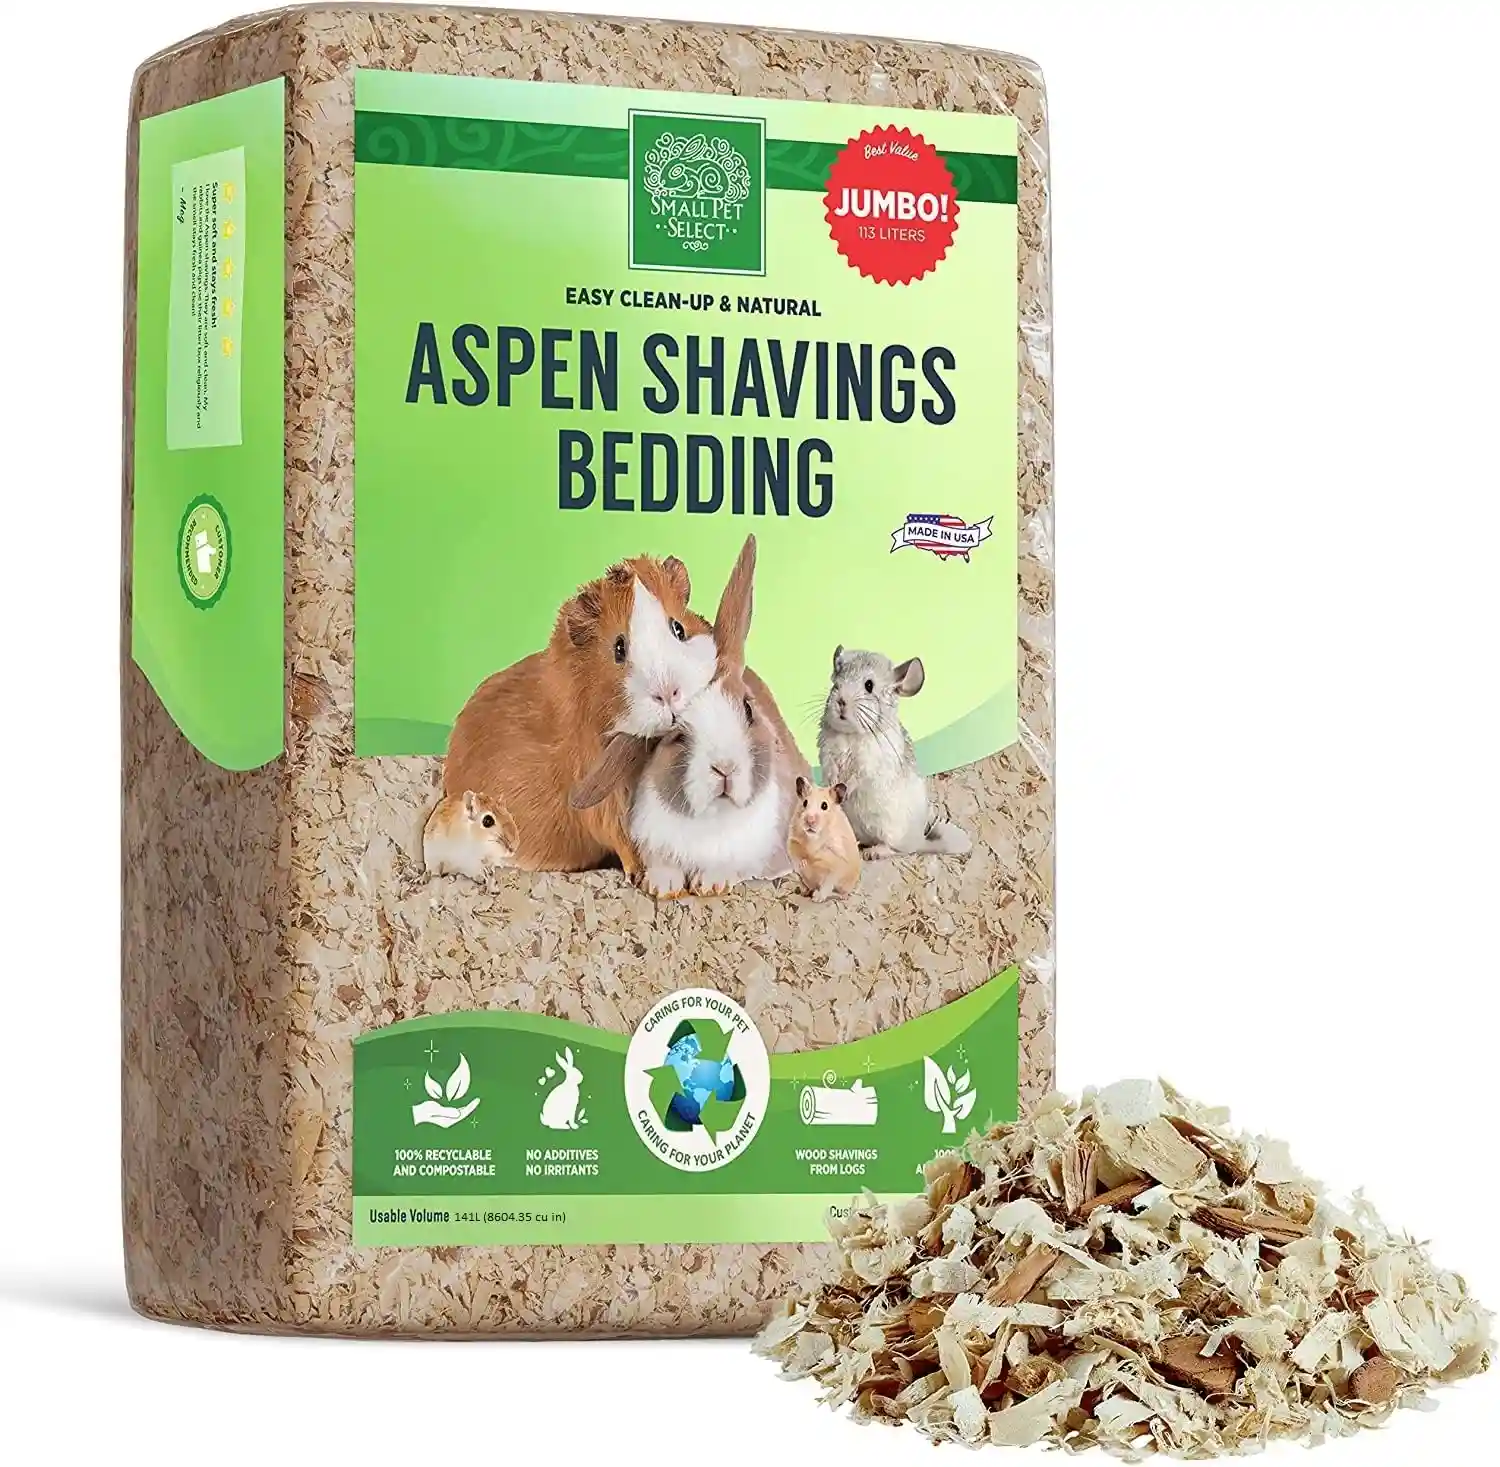 Small pet select aspen shavings product box